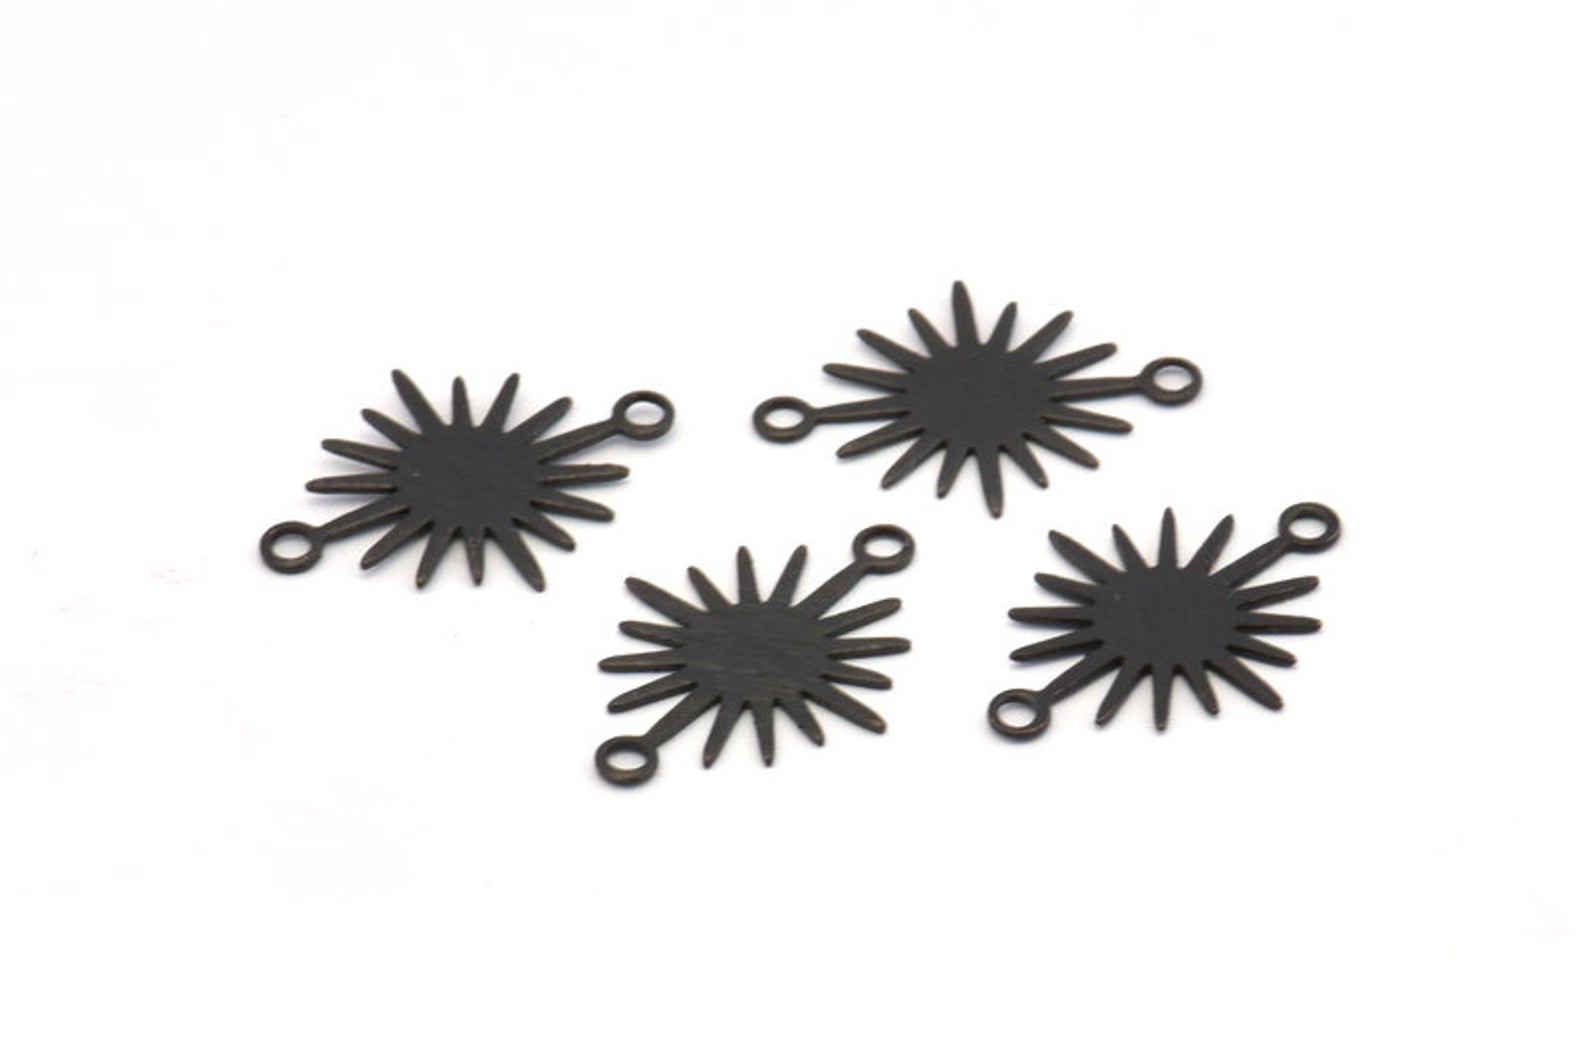 Black oxidised small sun charm/ connectors 1.8cm x 1.3cm x 6 pieces - 2 holes.